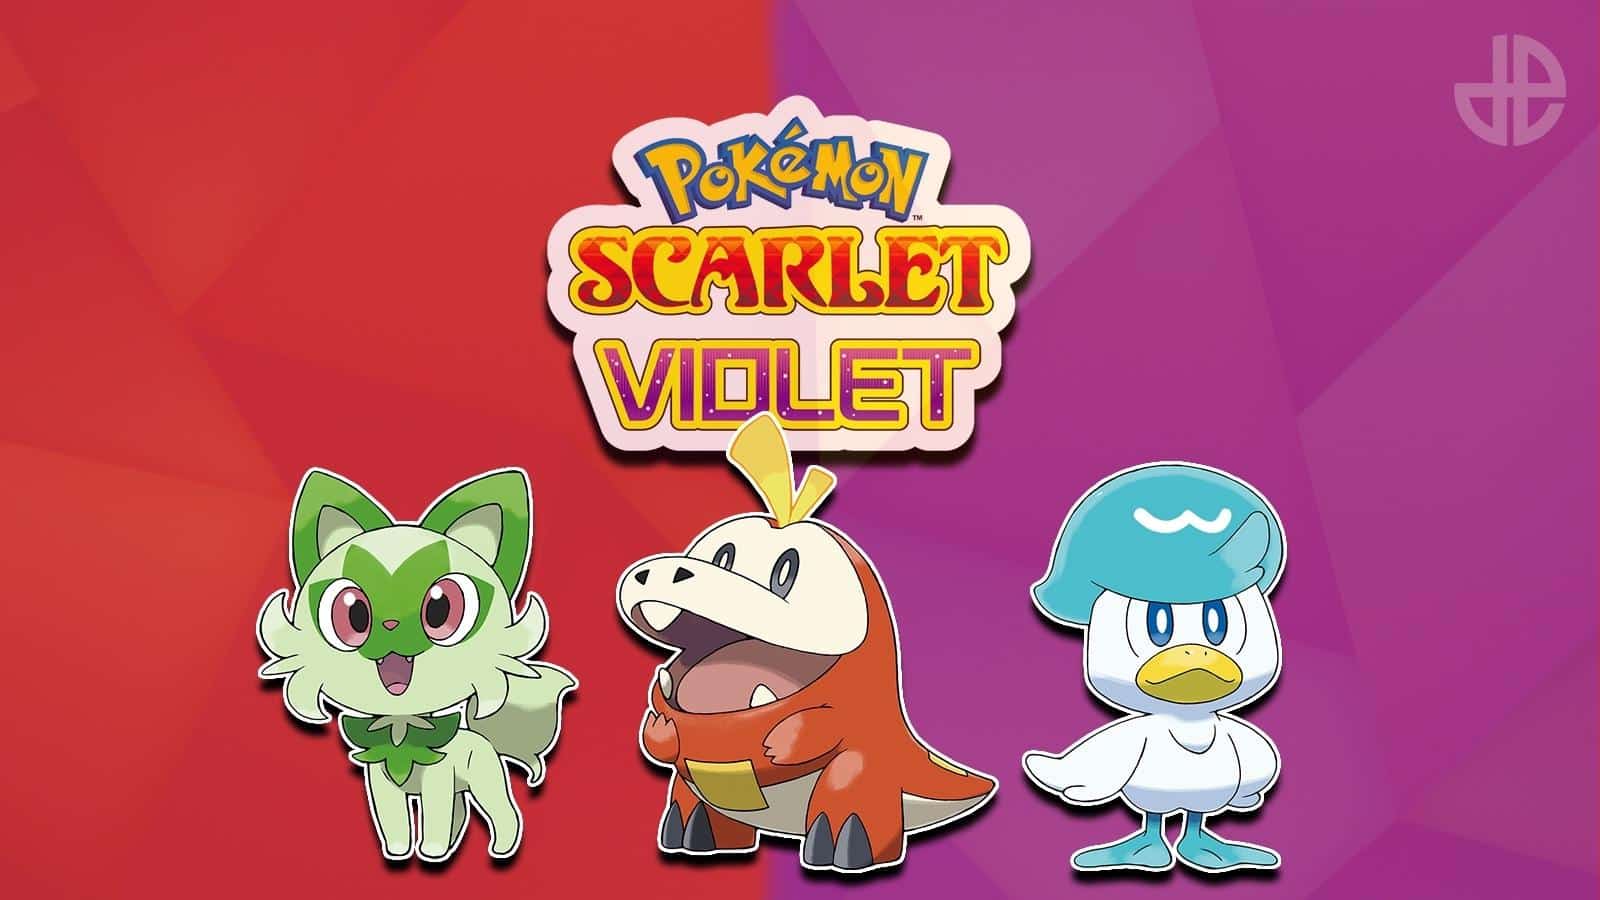 STARTER POKEMON EVOLUTIONS in Pokemon Scarlet & Violet #pokemon